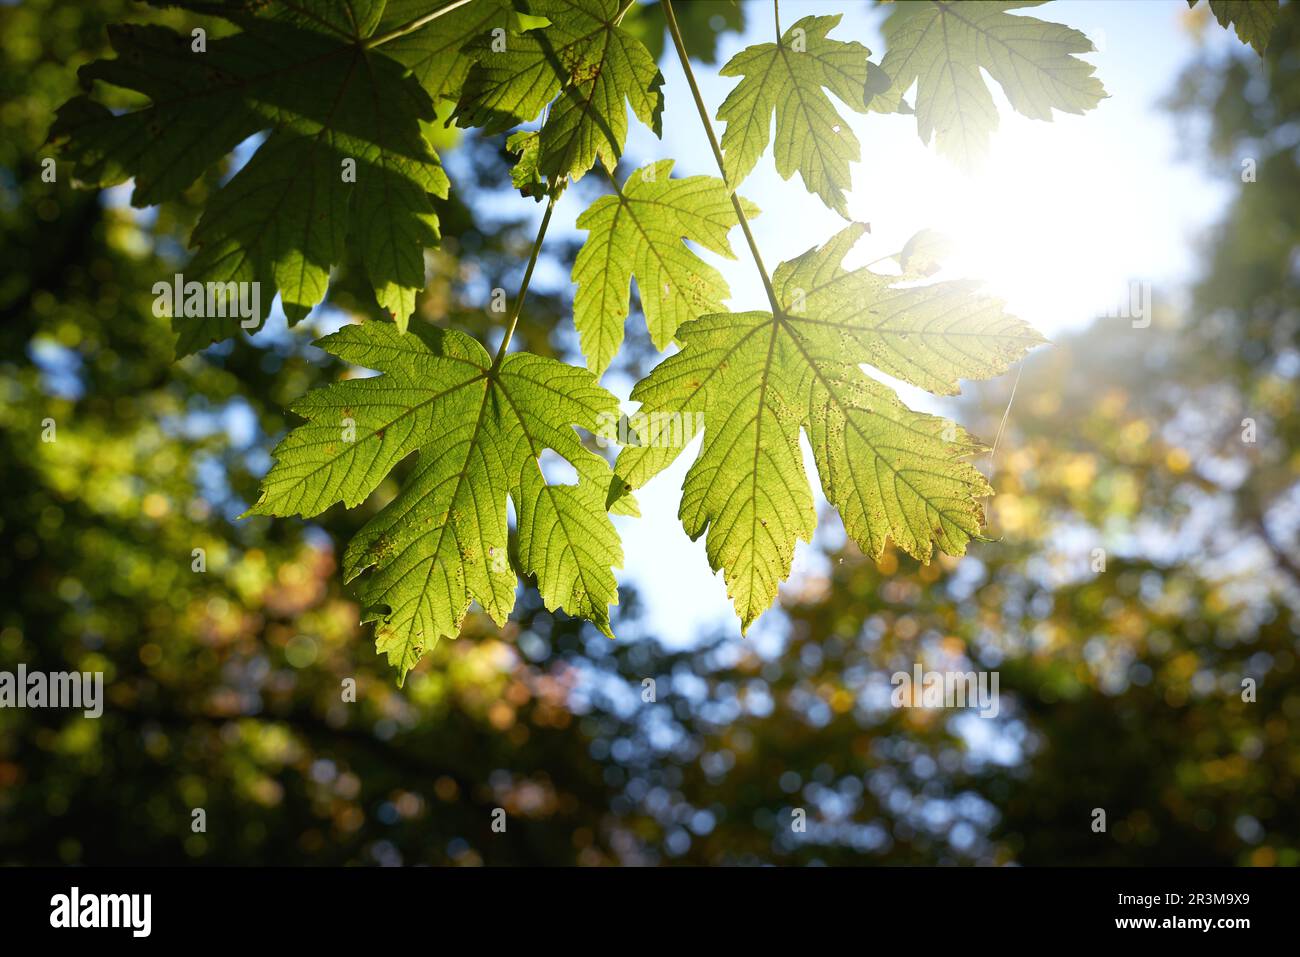 Feuilles d'érable sycomore, Acer pseudoplatanus à la fin de l'été avec contre-jour dans un parc Banque D'Images